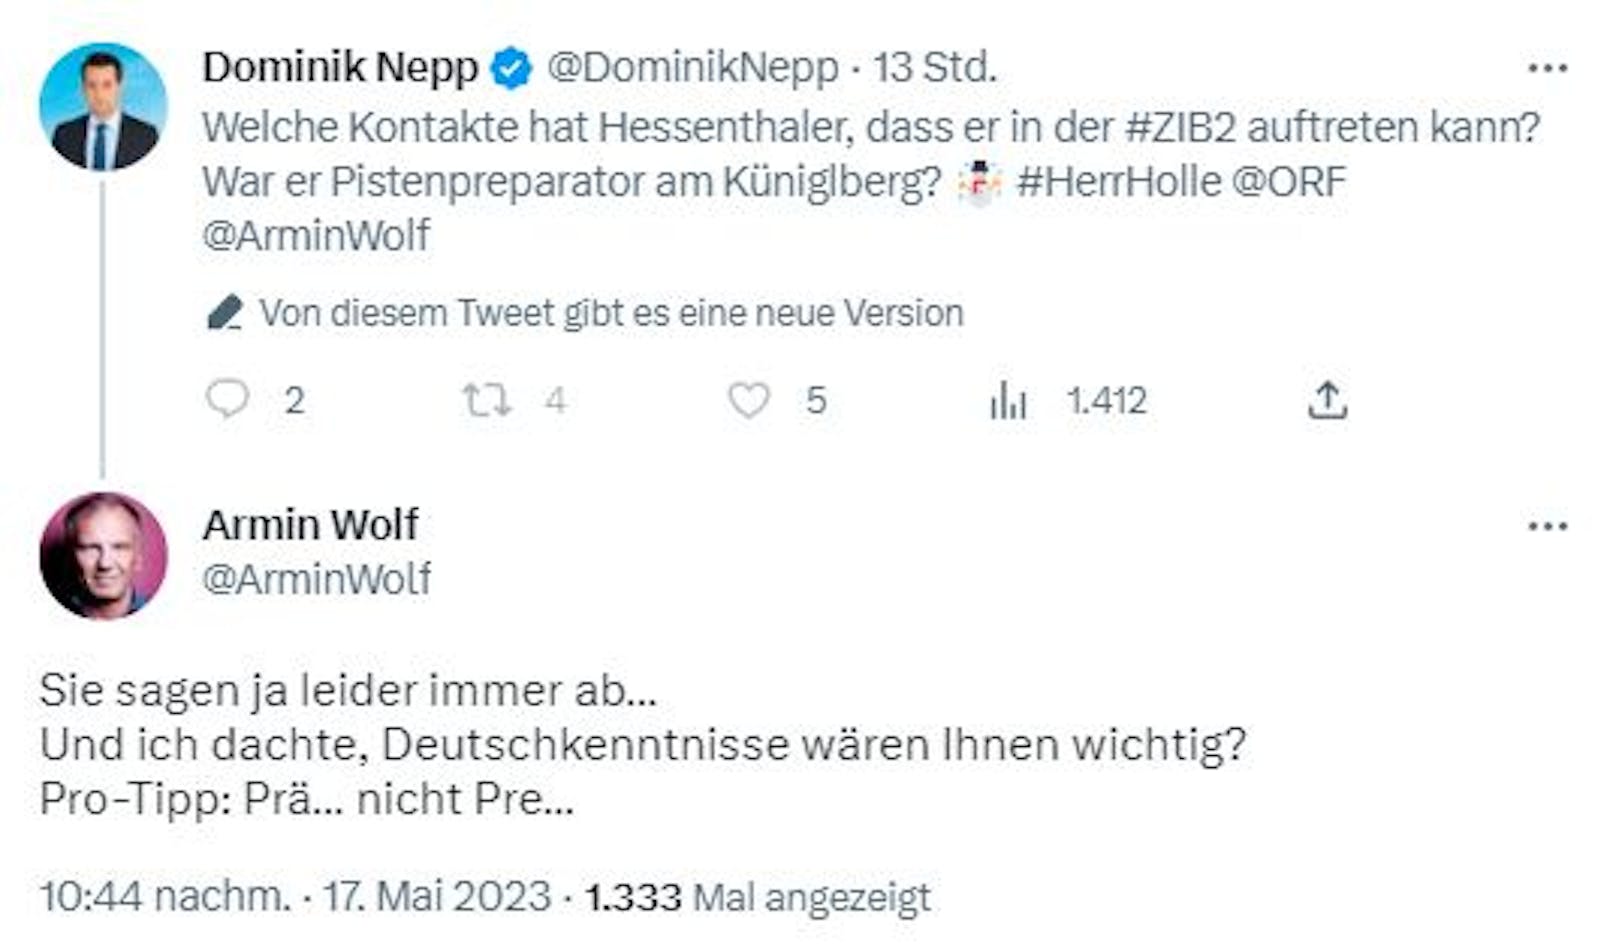 Armin Wolf zofft sich mit Dominik Nepp auf Twitter, der besserte seinen Beitrag dann aus.